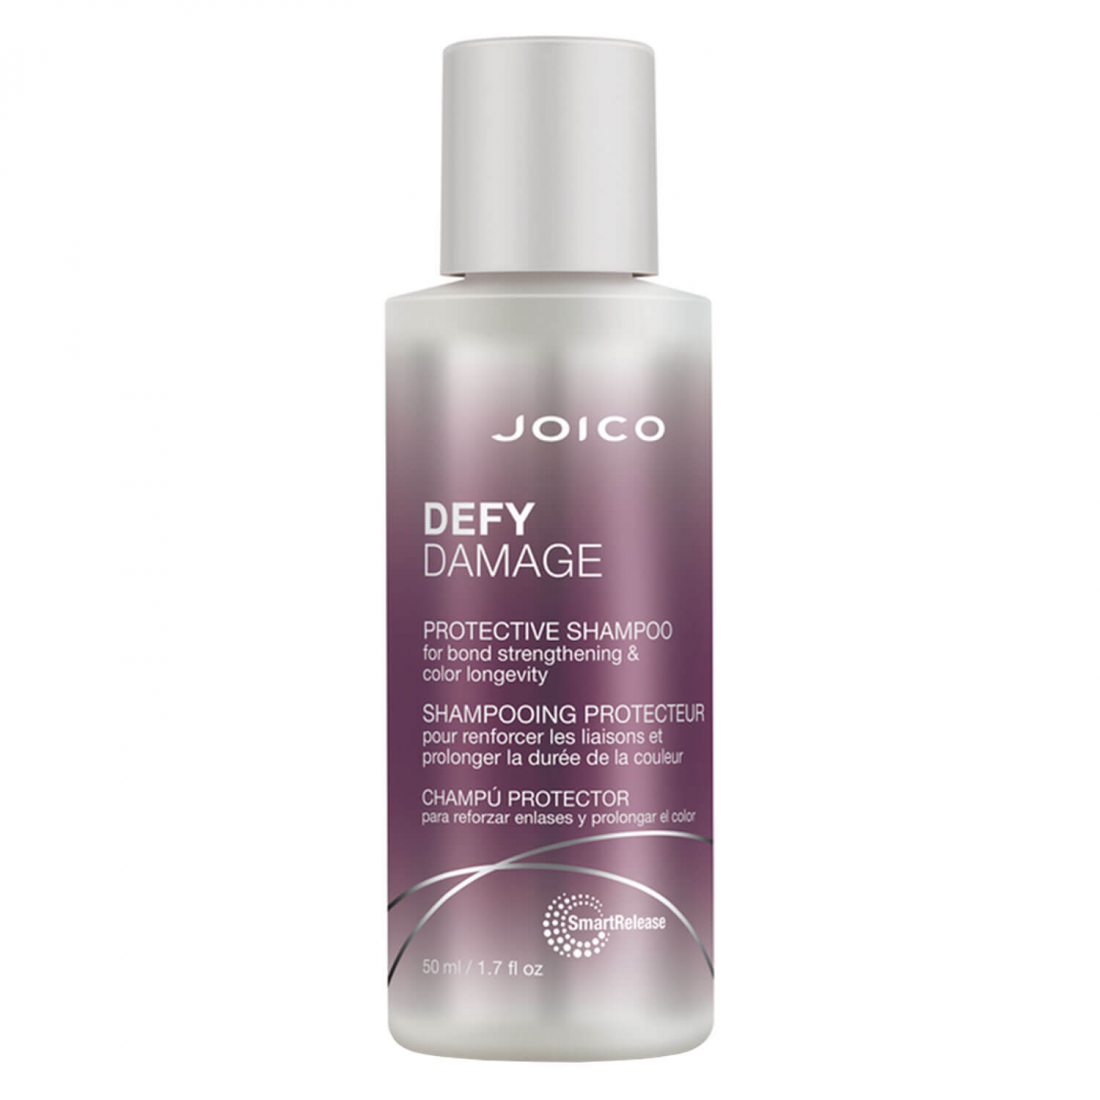 'Defy Damage' Shampoo - 50 ml